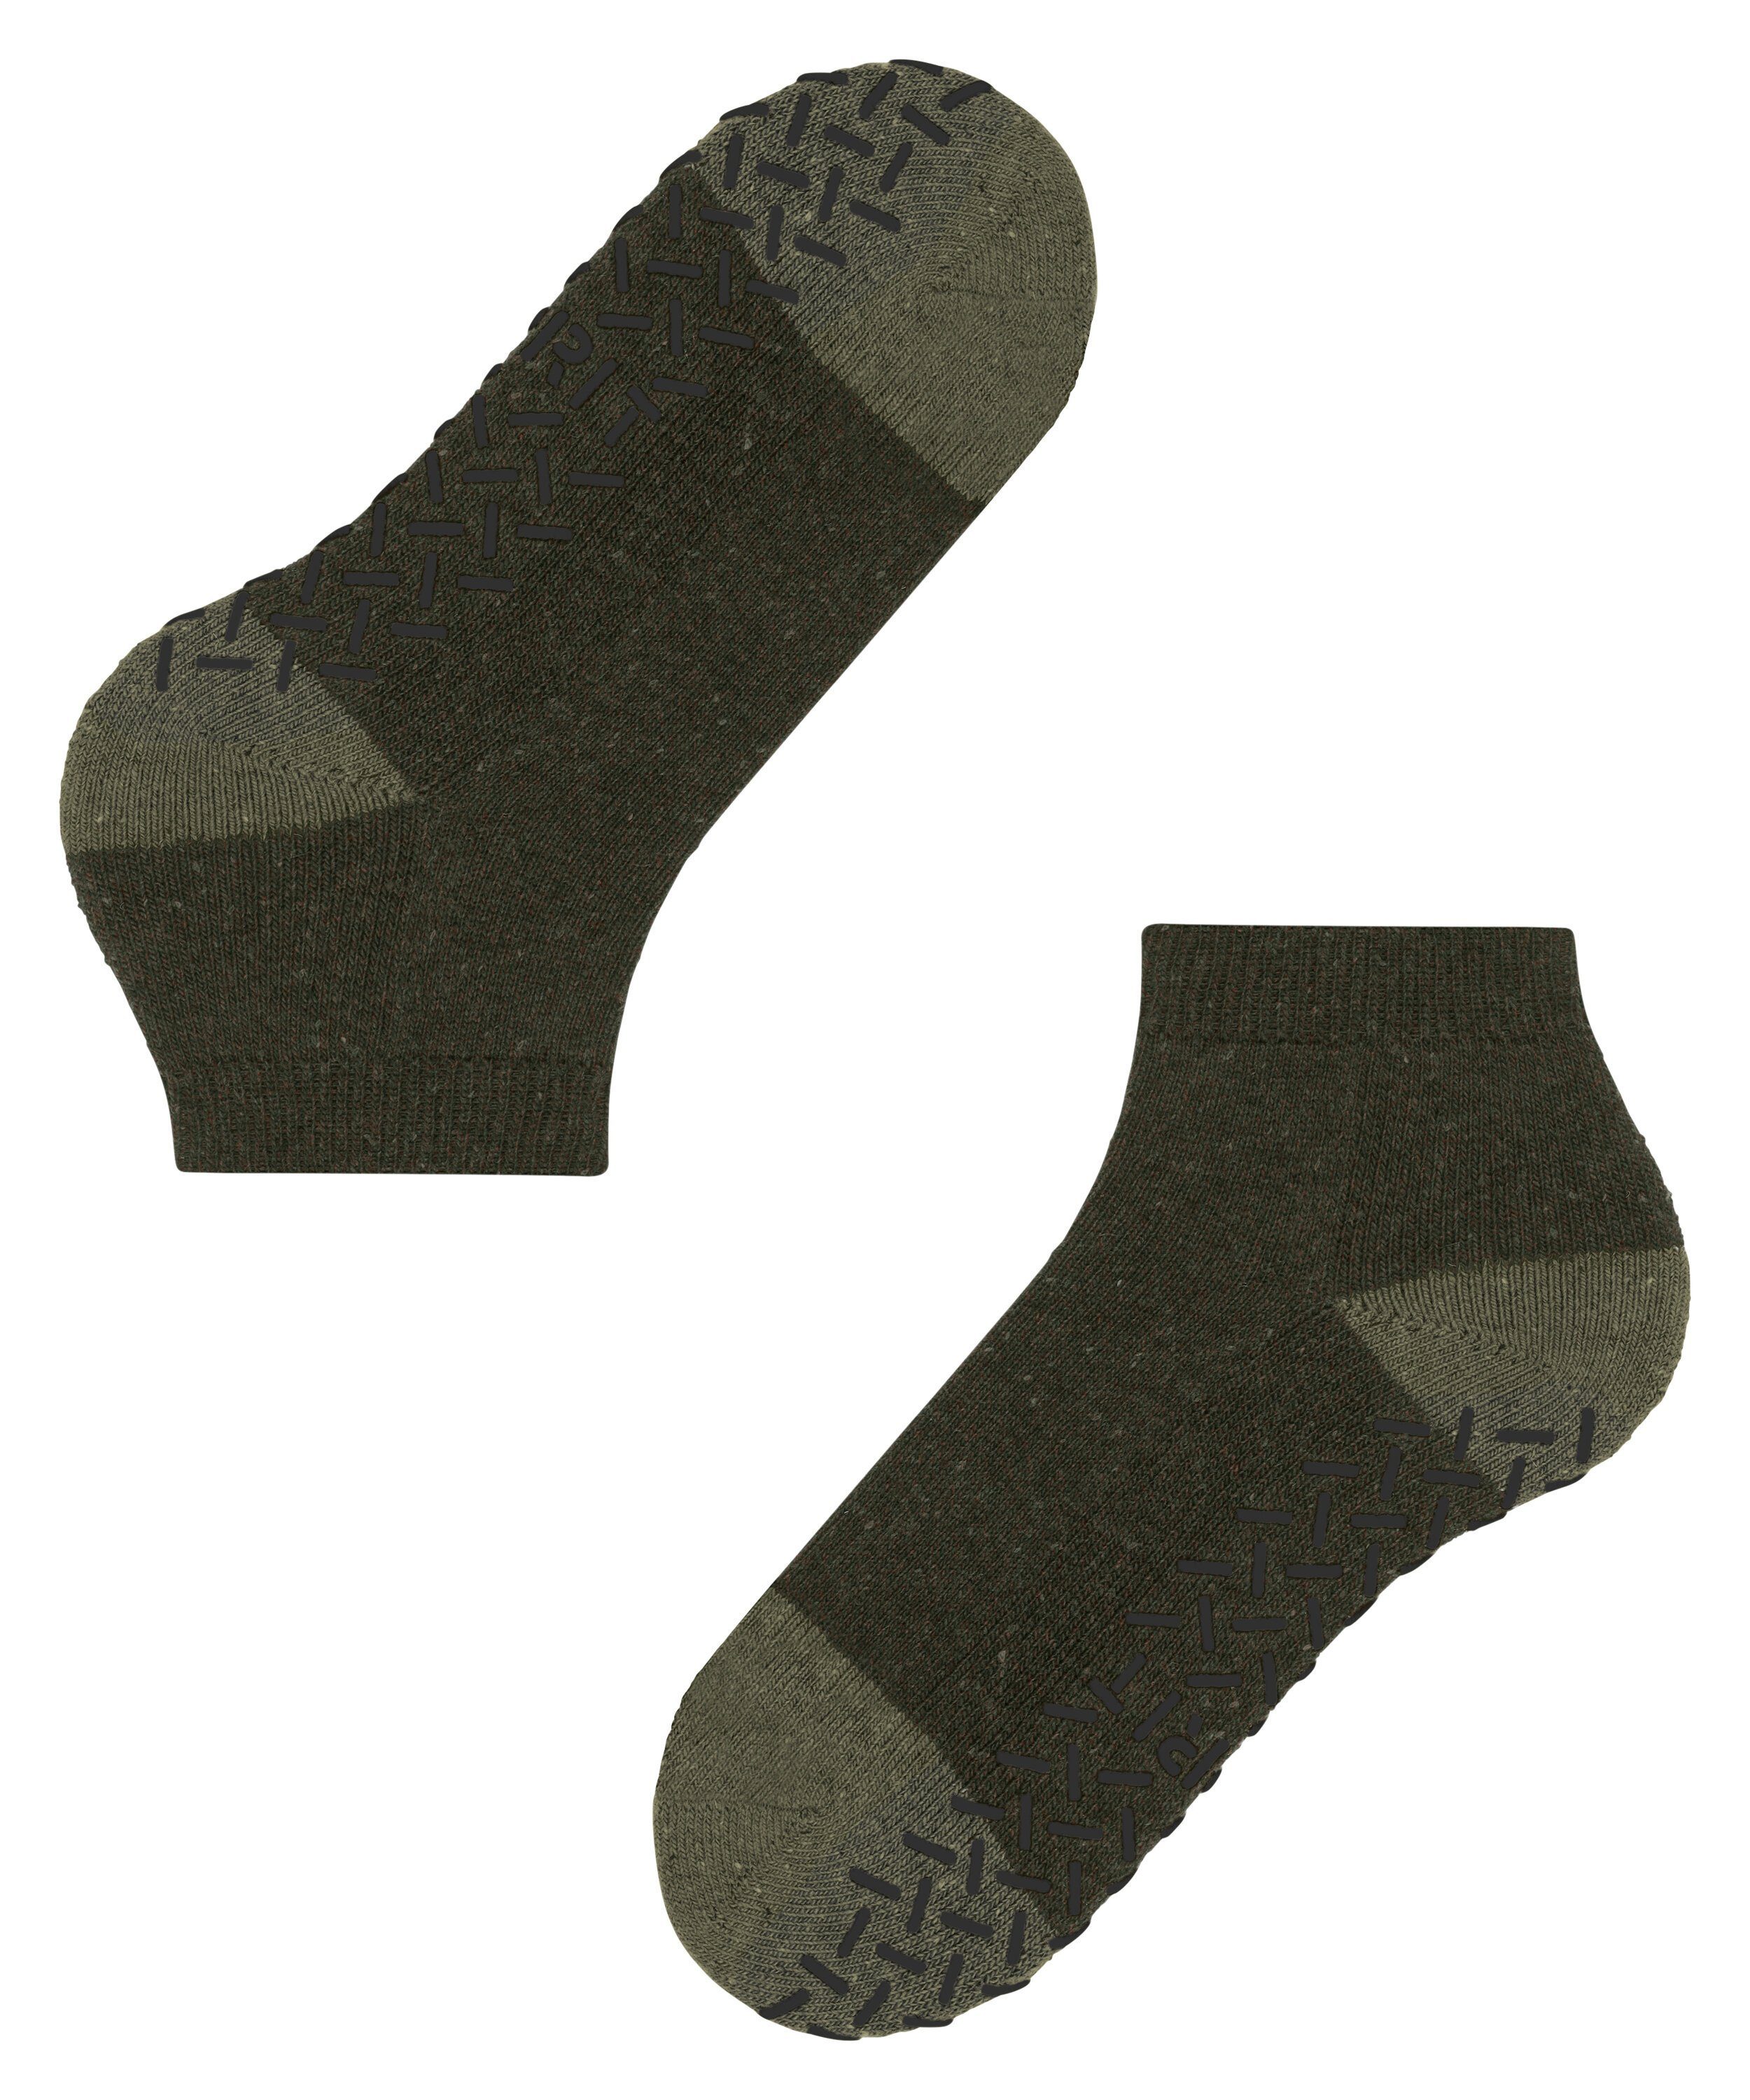 Esprit Socken Effect olivine (7210) (1-Paar)